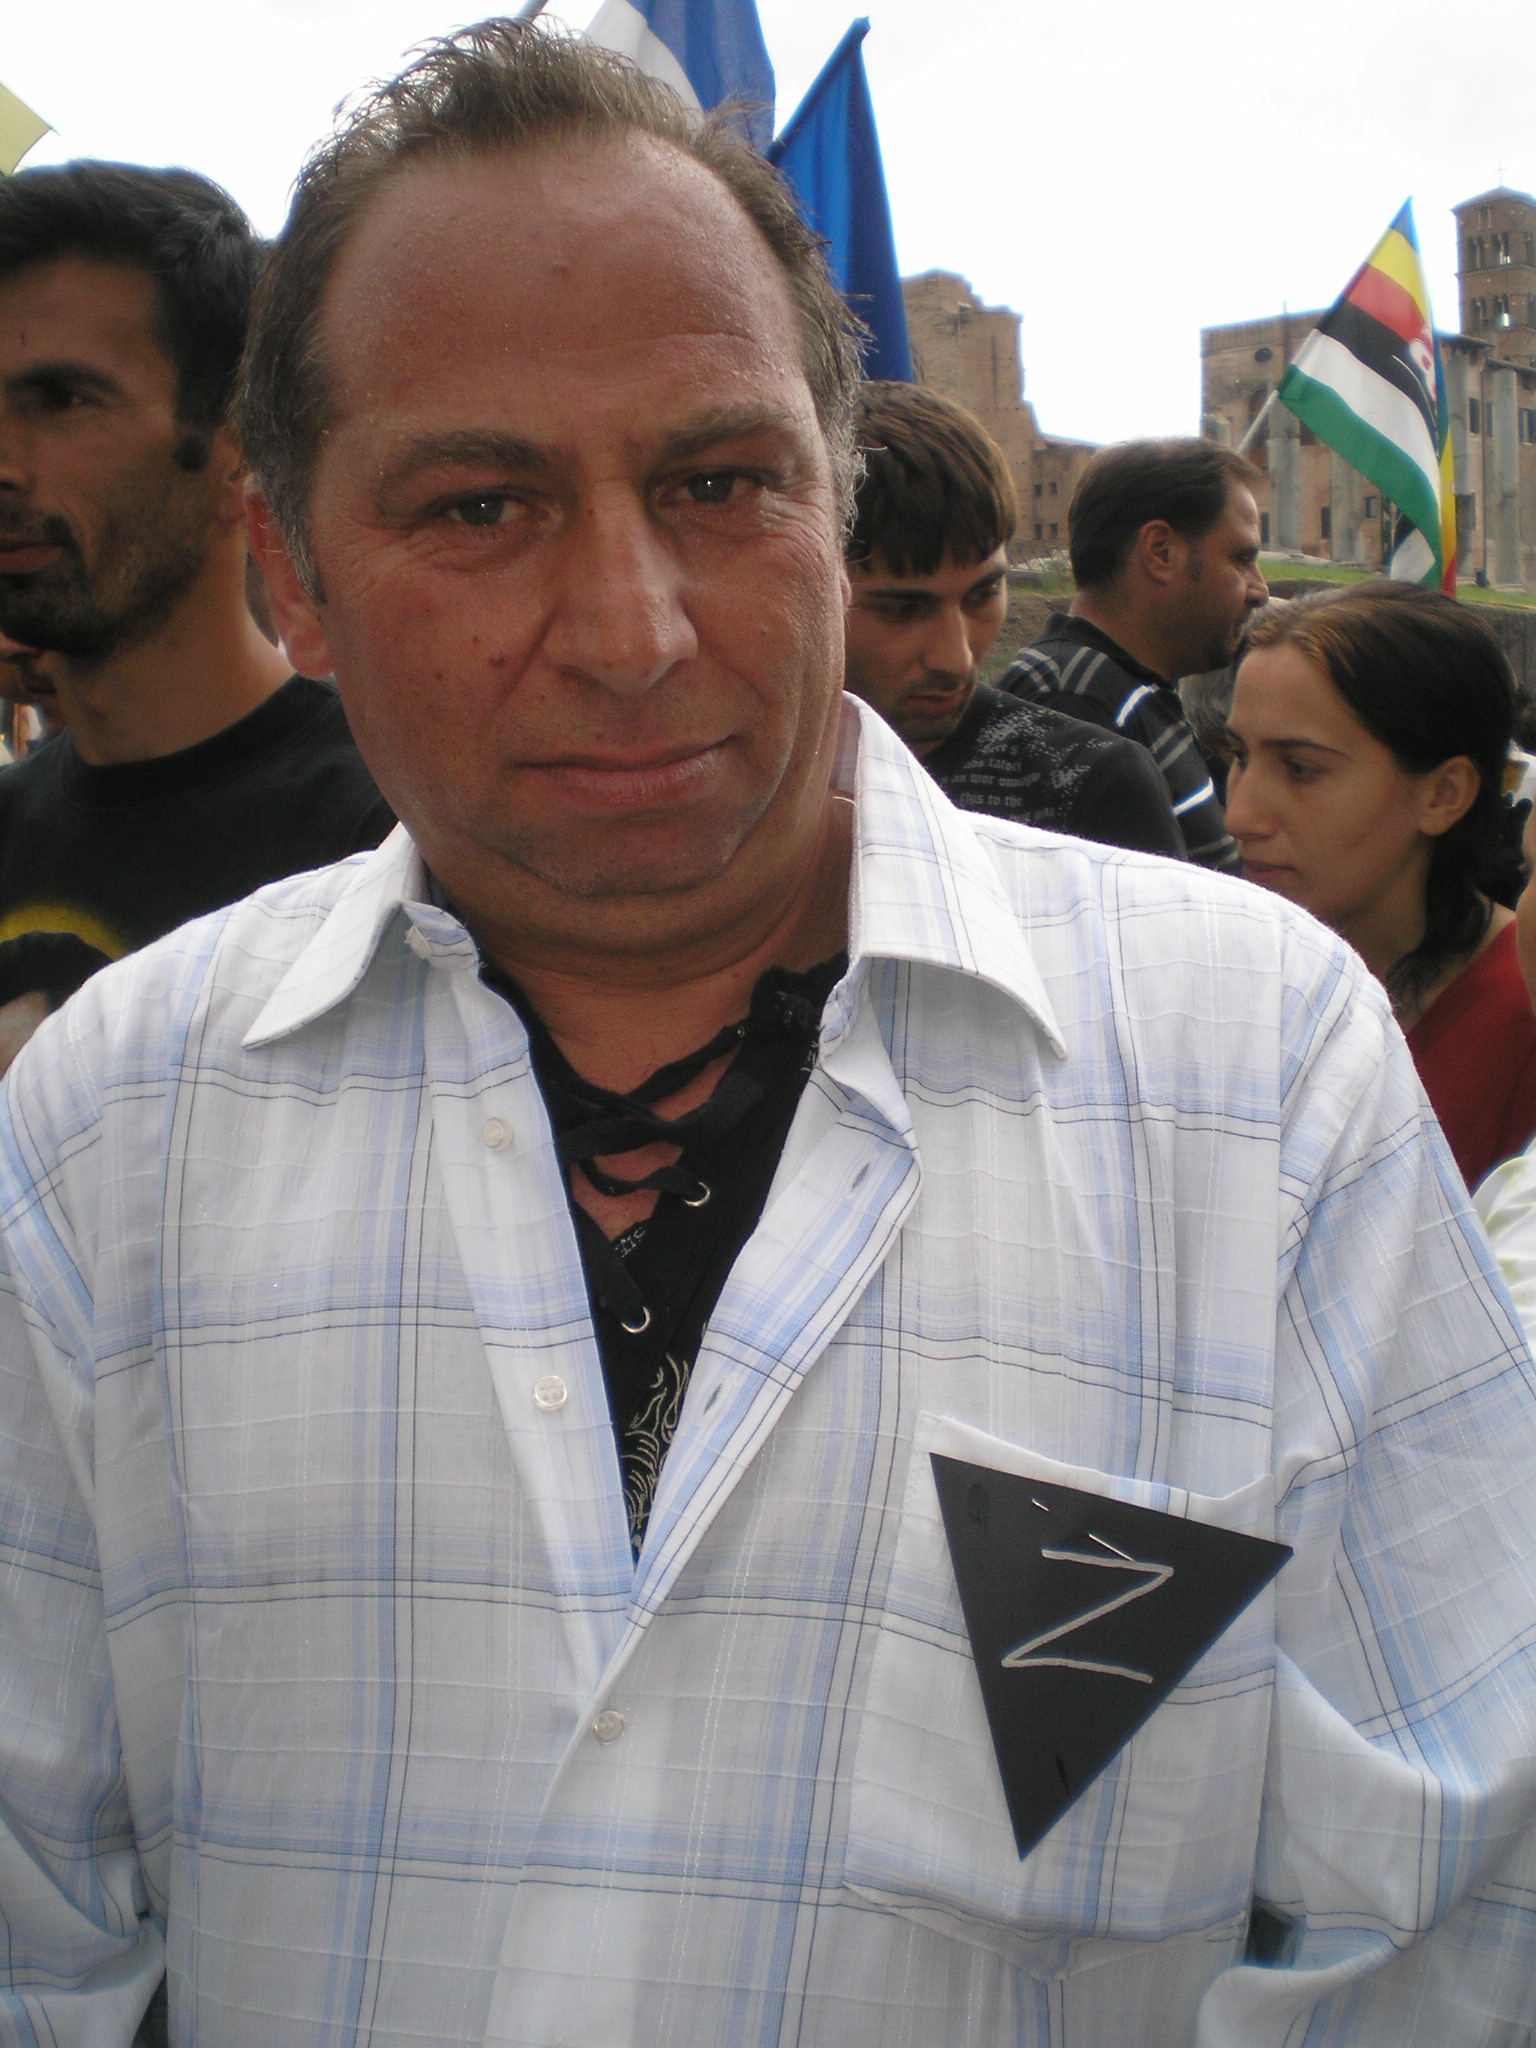 Un partecipante al corteo dell'8 giugno 2008 organizzato da associazioni rom e sinte. Il triangolo nero identificava gli "zingari" durante la persecuzione nazista